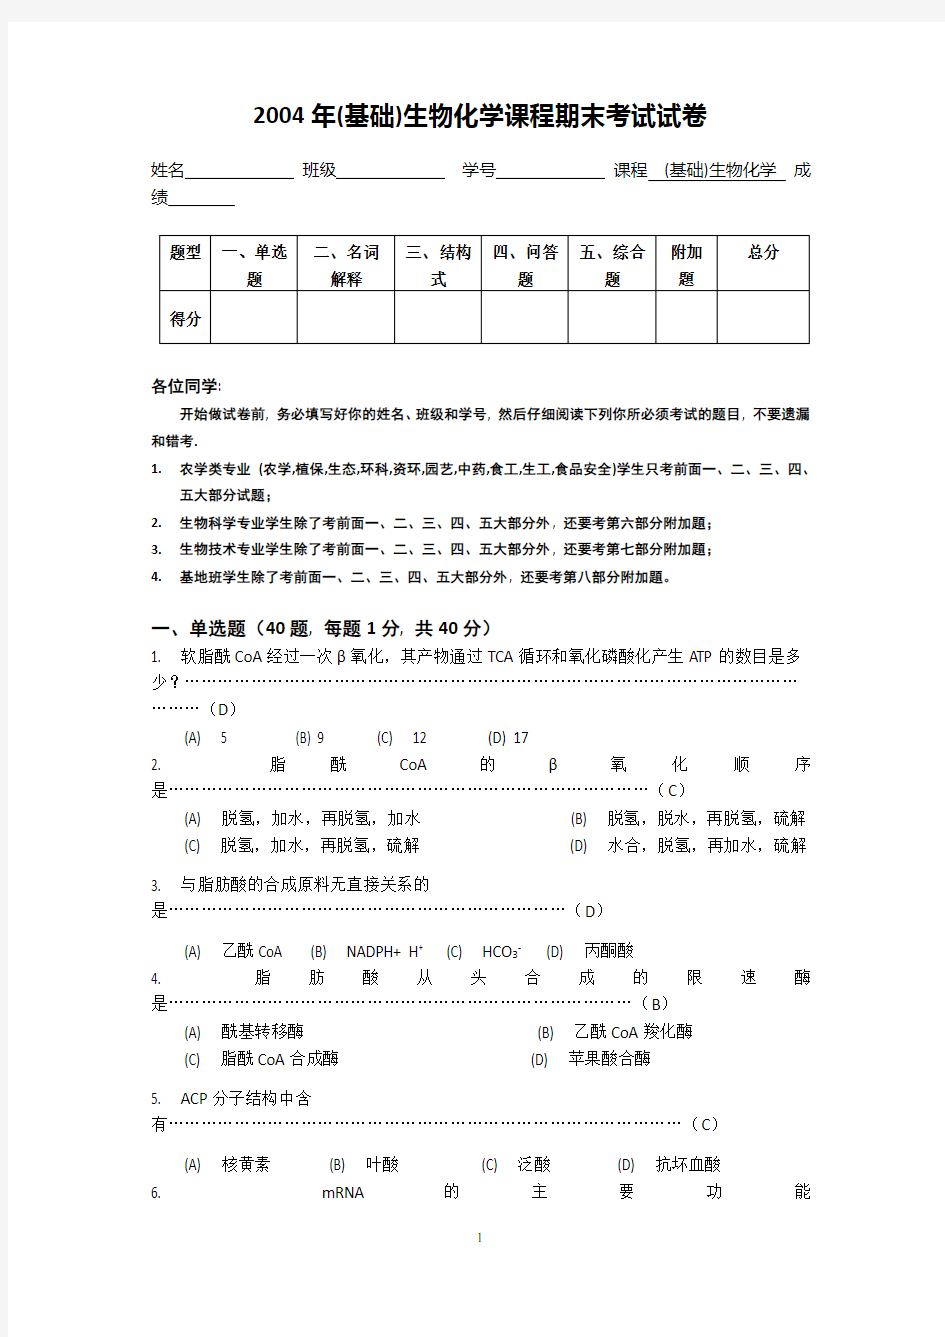 南京农业大学生物化学期末考试试卷及答案